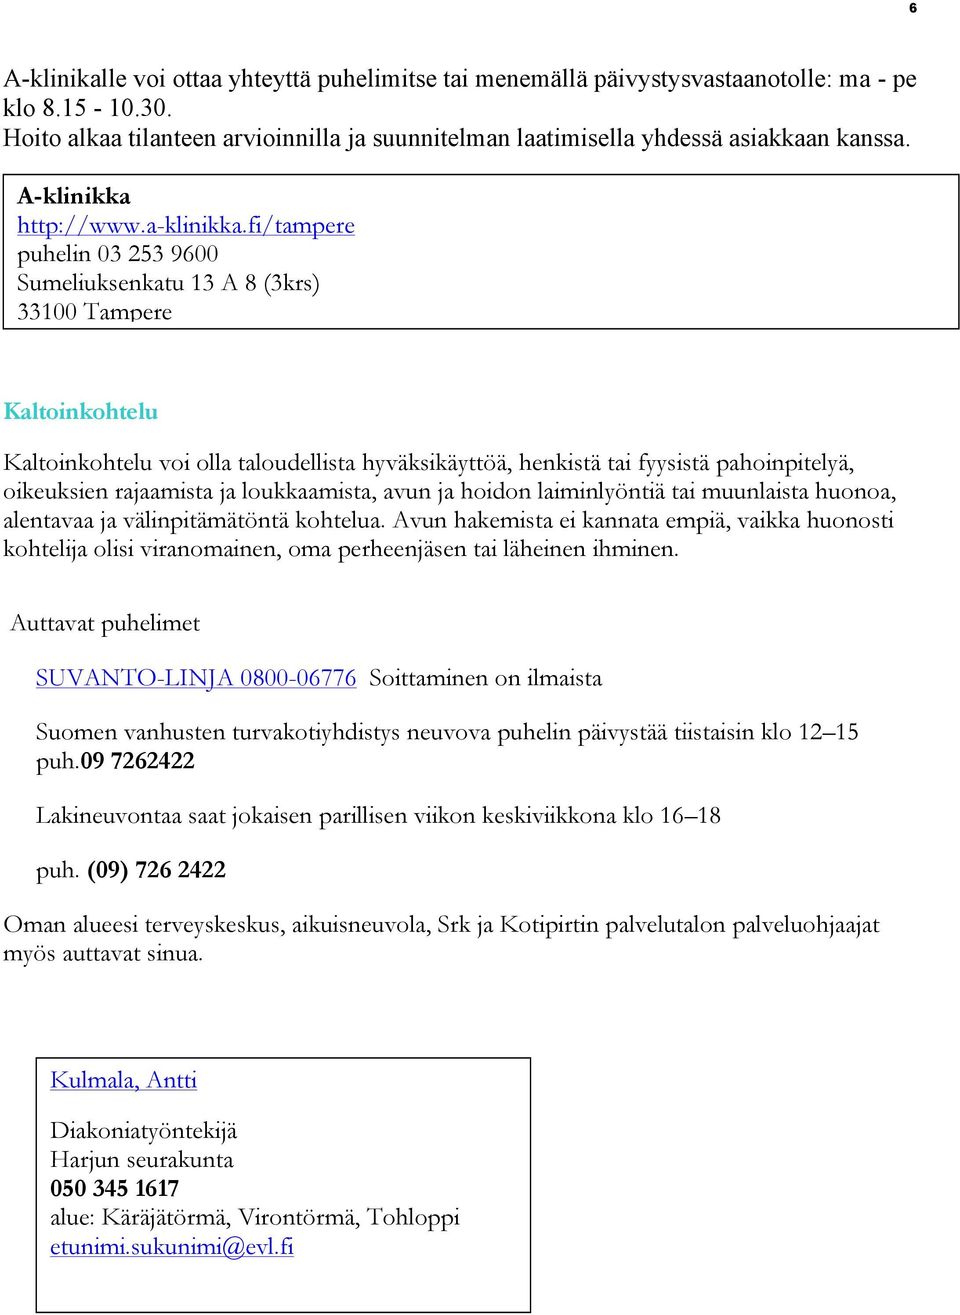 fi/tampere puhelin 03 253 9600 Sumeliuksenkatu 13 A 8 (3krs) 33100 Tampere Kaltoinkohtelu Kaltoinkohtelu voi olla taloudellista hyväksikäyttöä, henkistä tai fyysistä pahoinpitelyä, oikeuksien